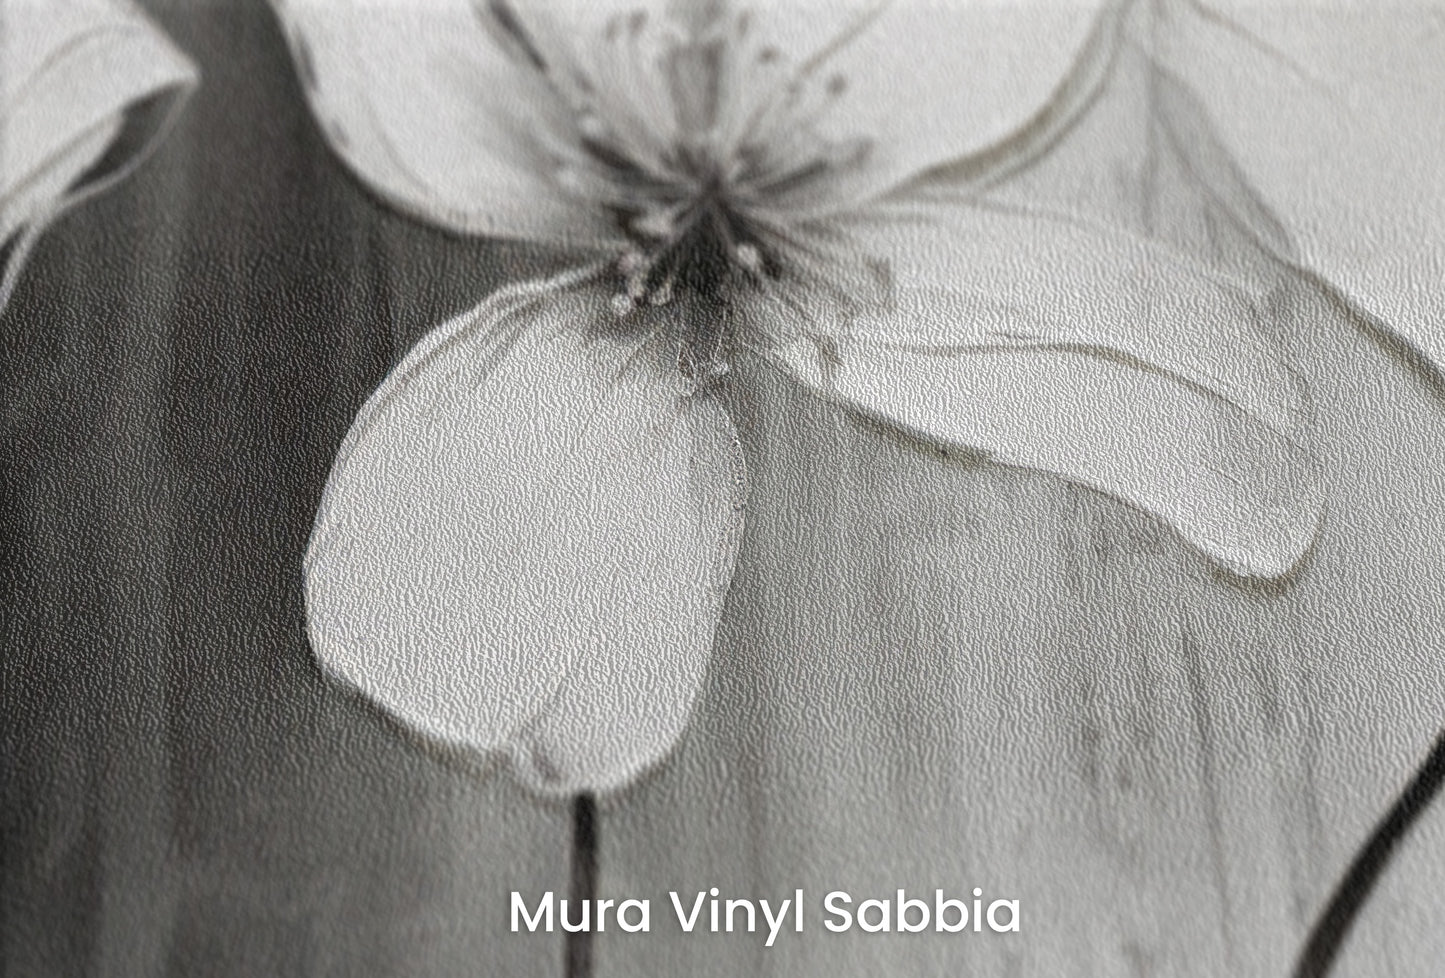 Zbliżenie na artystyczną fototapetę o nazwie CHIAROSCURO BLOSSOMS na podłożu Mura Vinyl Sabbia struktura grubego ziarna piasku.